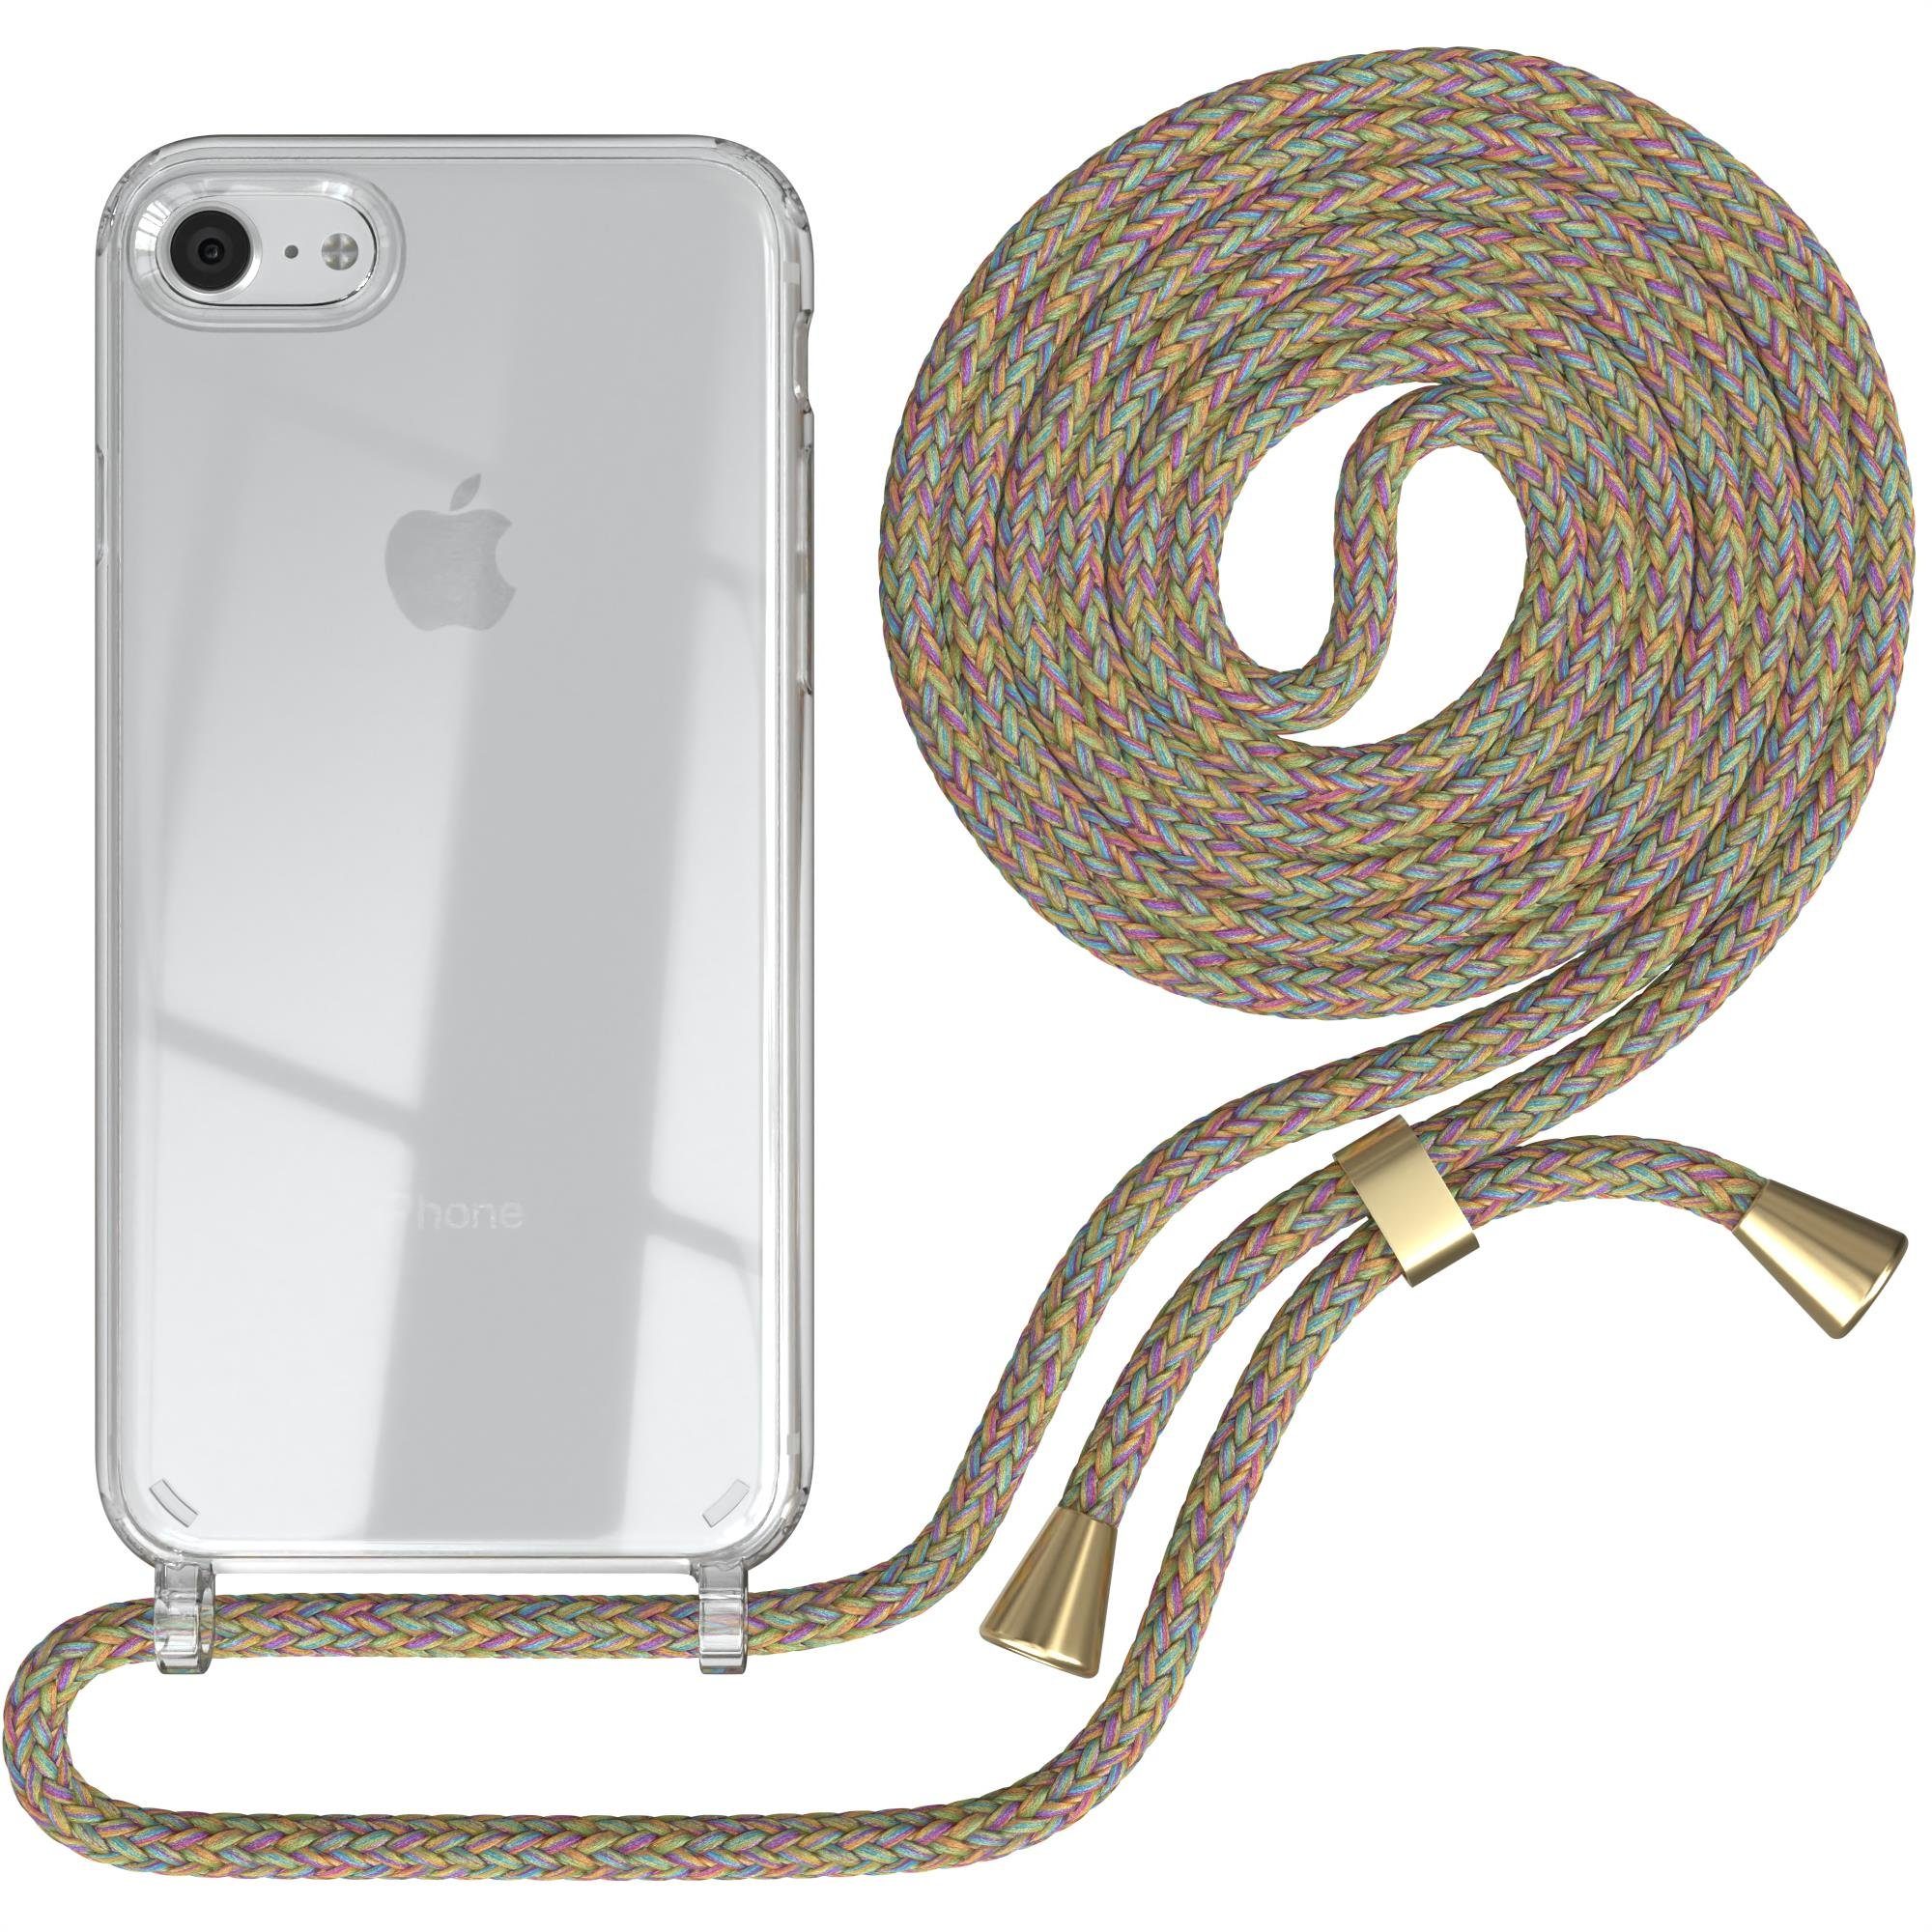 EAZY CASE Handykette Hülle mit Kette für iPhone SE 2022/2020 iPhone 8/7 4,7 Zoll, Ketten Hülle Schultergurt Schutz Hülle Tasche mit Band Bunt Clip Gold